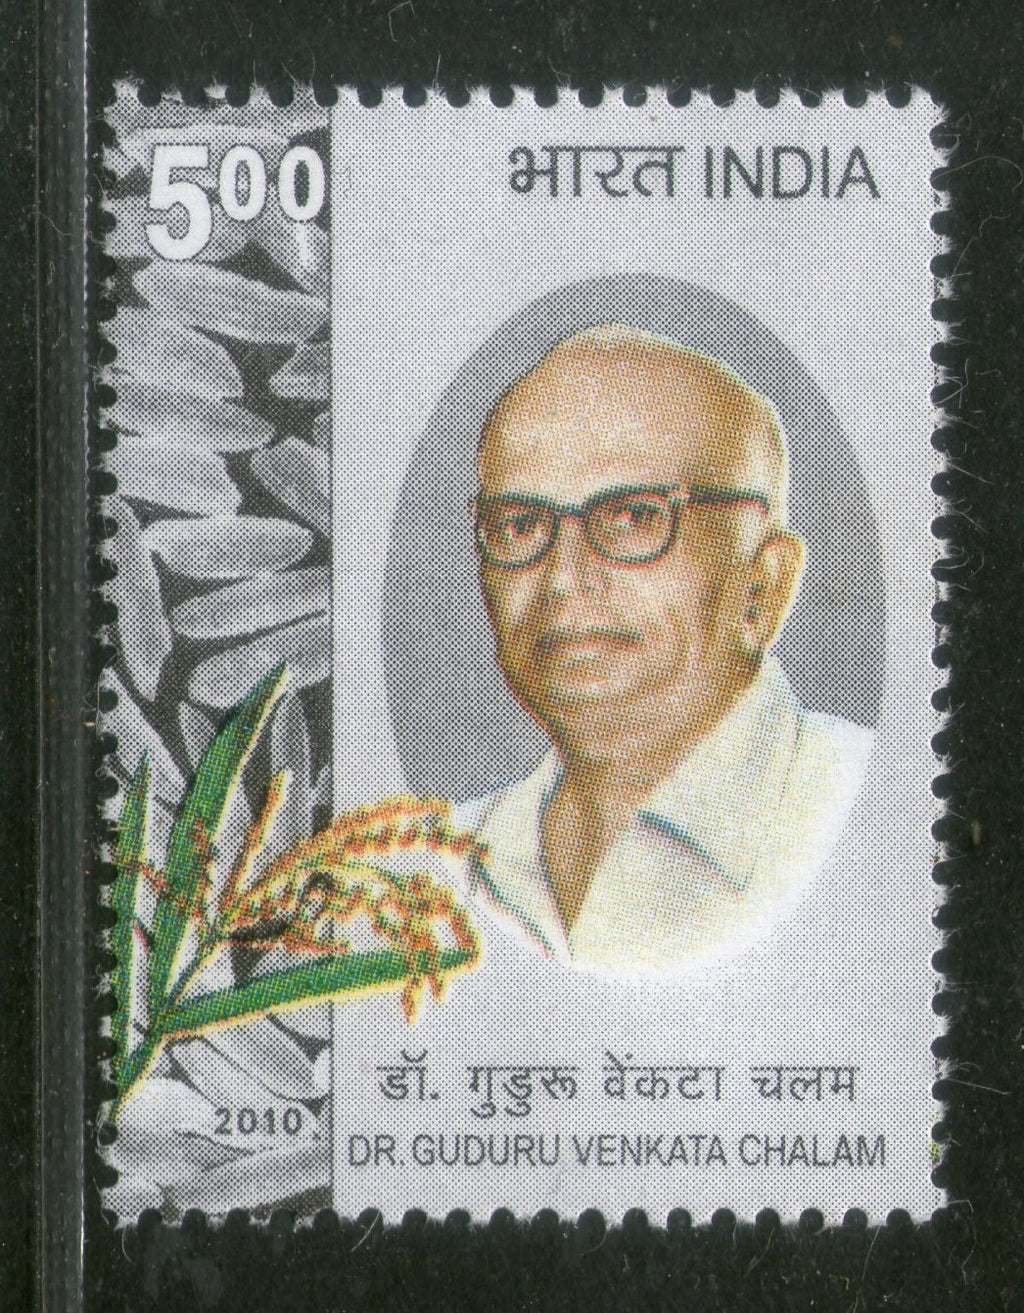 India 2010 Dr. Guduru Venkatachalam Agriculture Phila-2594  MNH